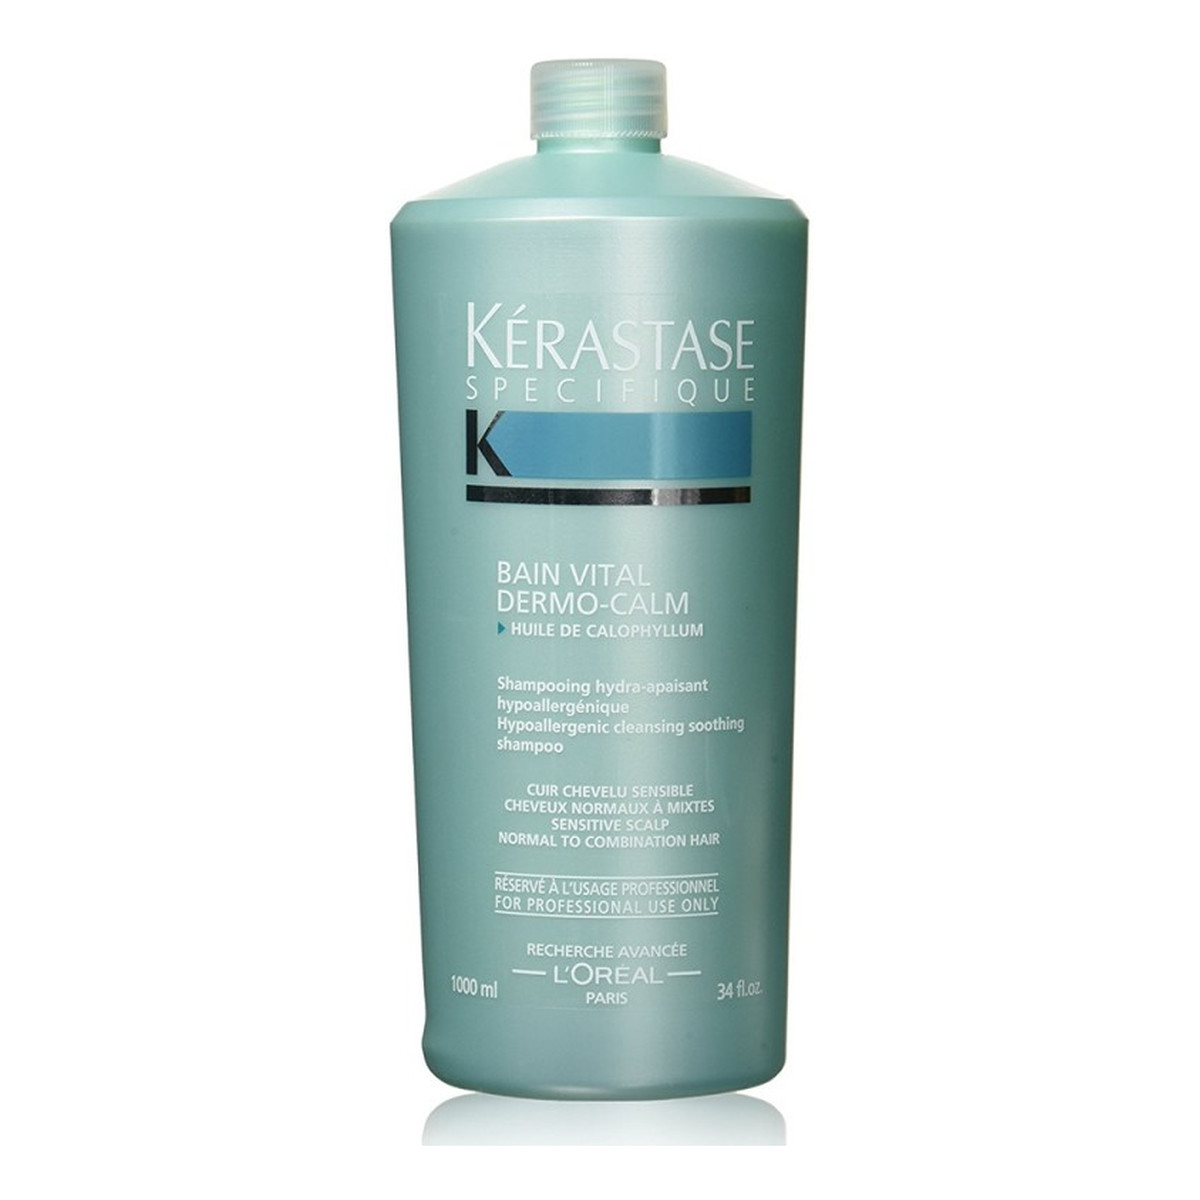 Kerastase Specifique Dermo-Calm oczyszczający szampon kojący do wrażliwej skóry głowy 1000ml